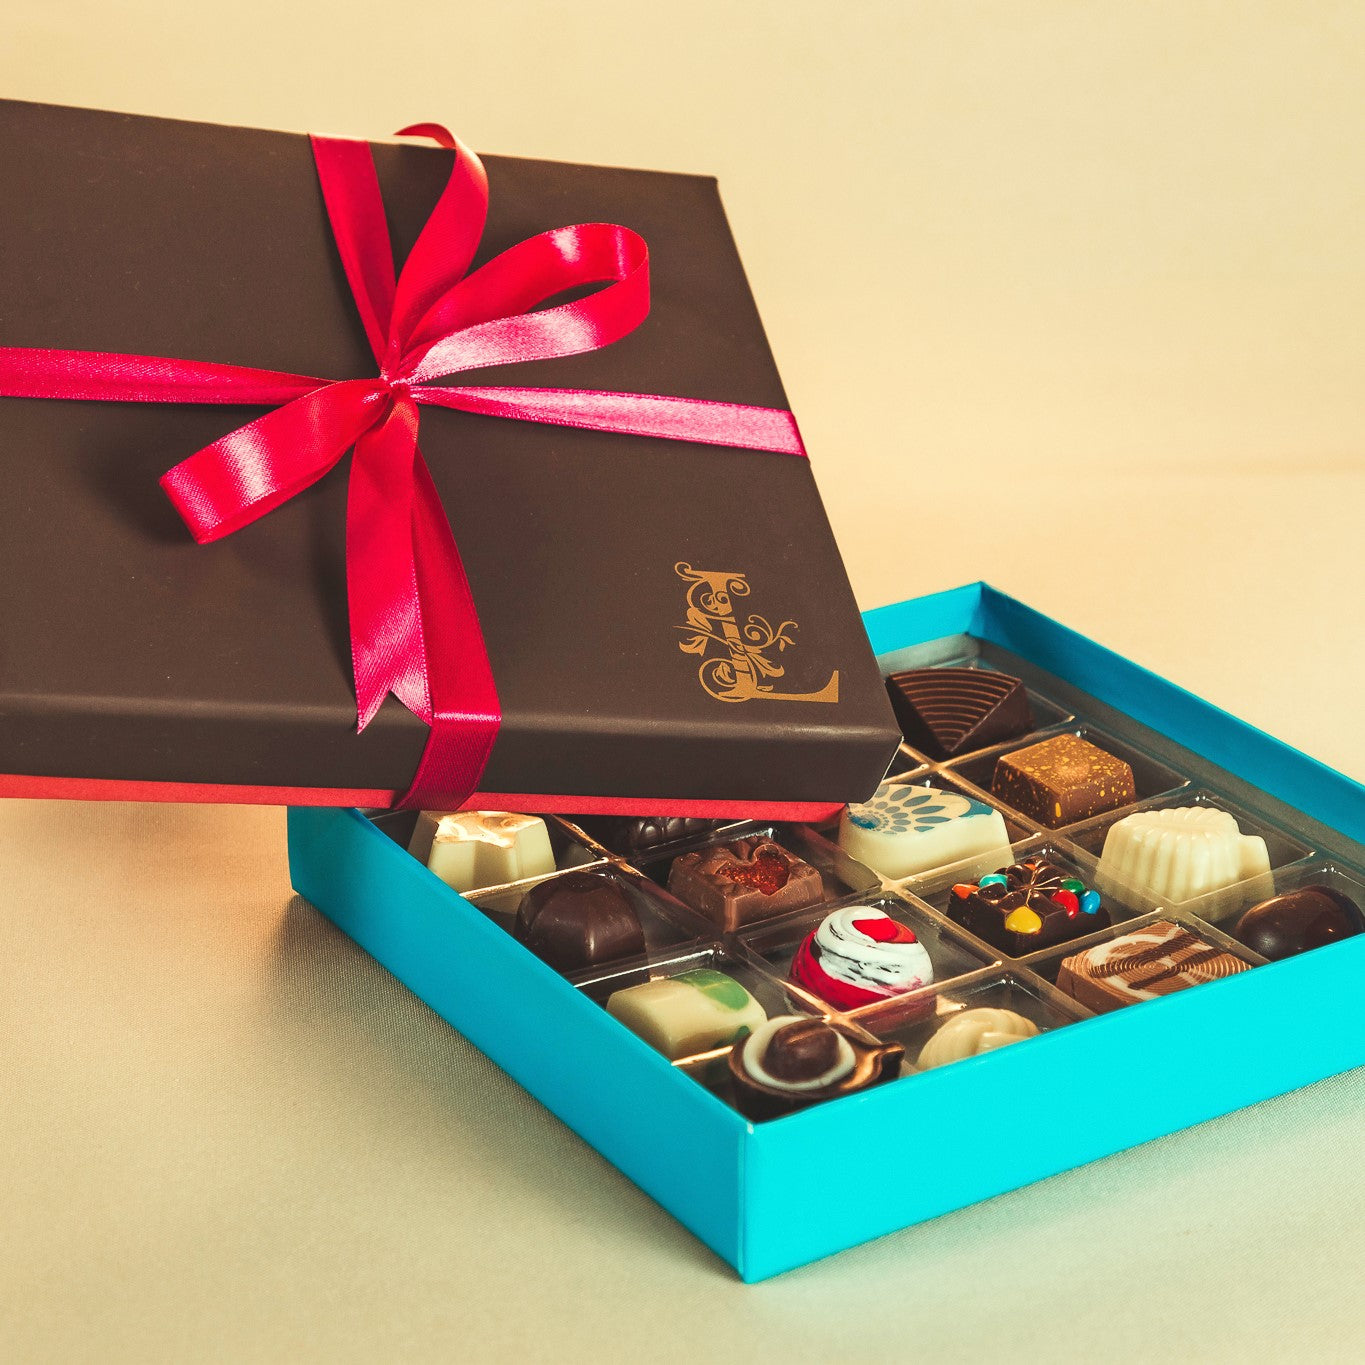 Caja de 16 Chocolates – Chocolatería La Catalana